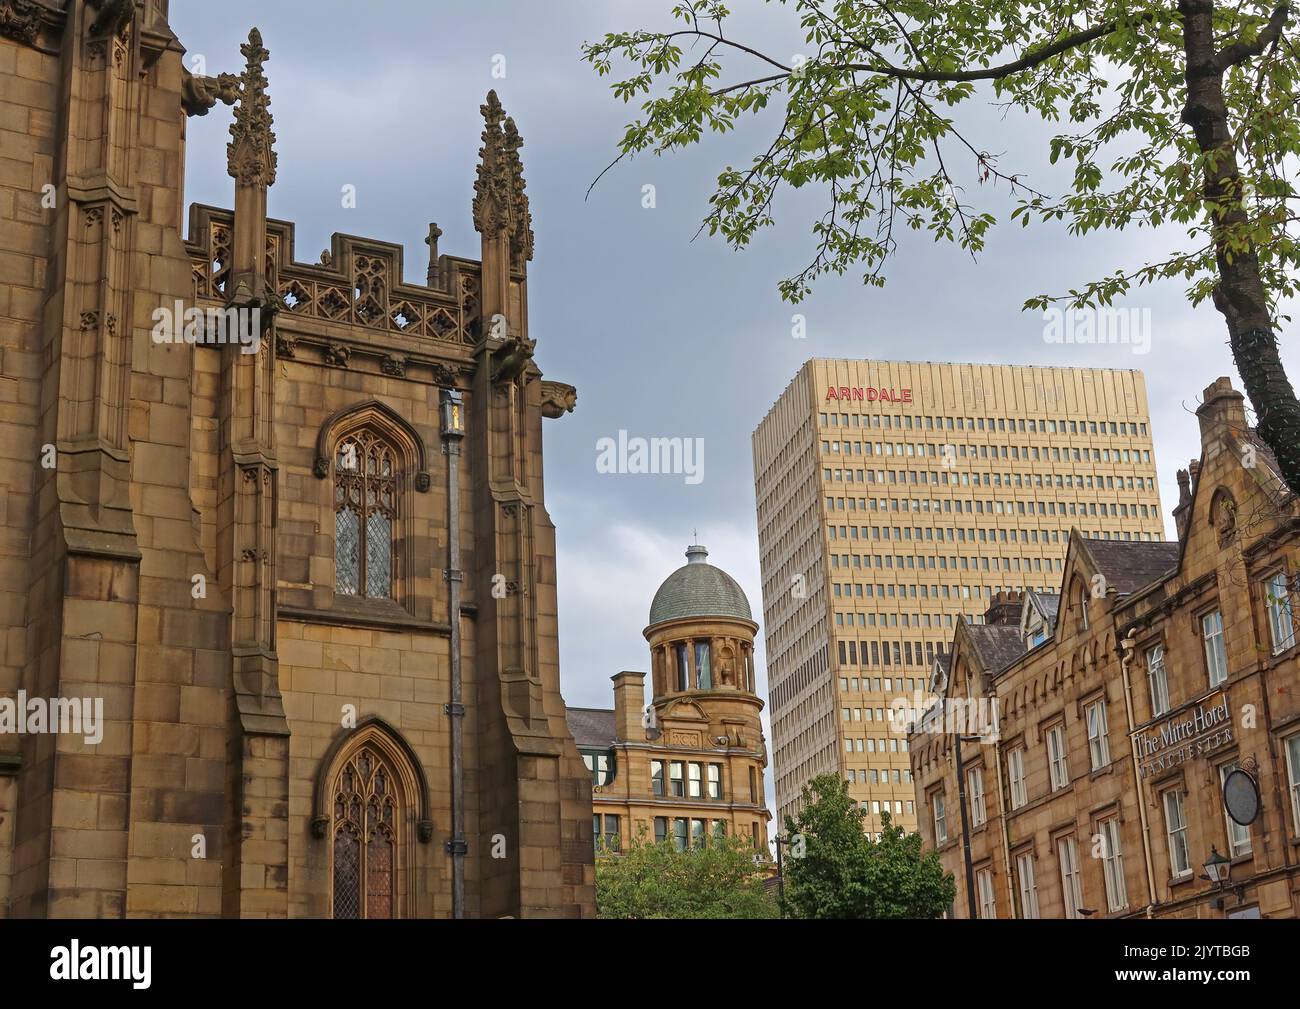 Ancienne et nouvelle architecture de Manchester, 1800s cathédrale, 1970s Arndale Centre et 1700s Mitre Hotel, Victoria St, Manchester, Angleterre, Royaume-Uni, M3 1SX Banque D'Images